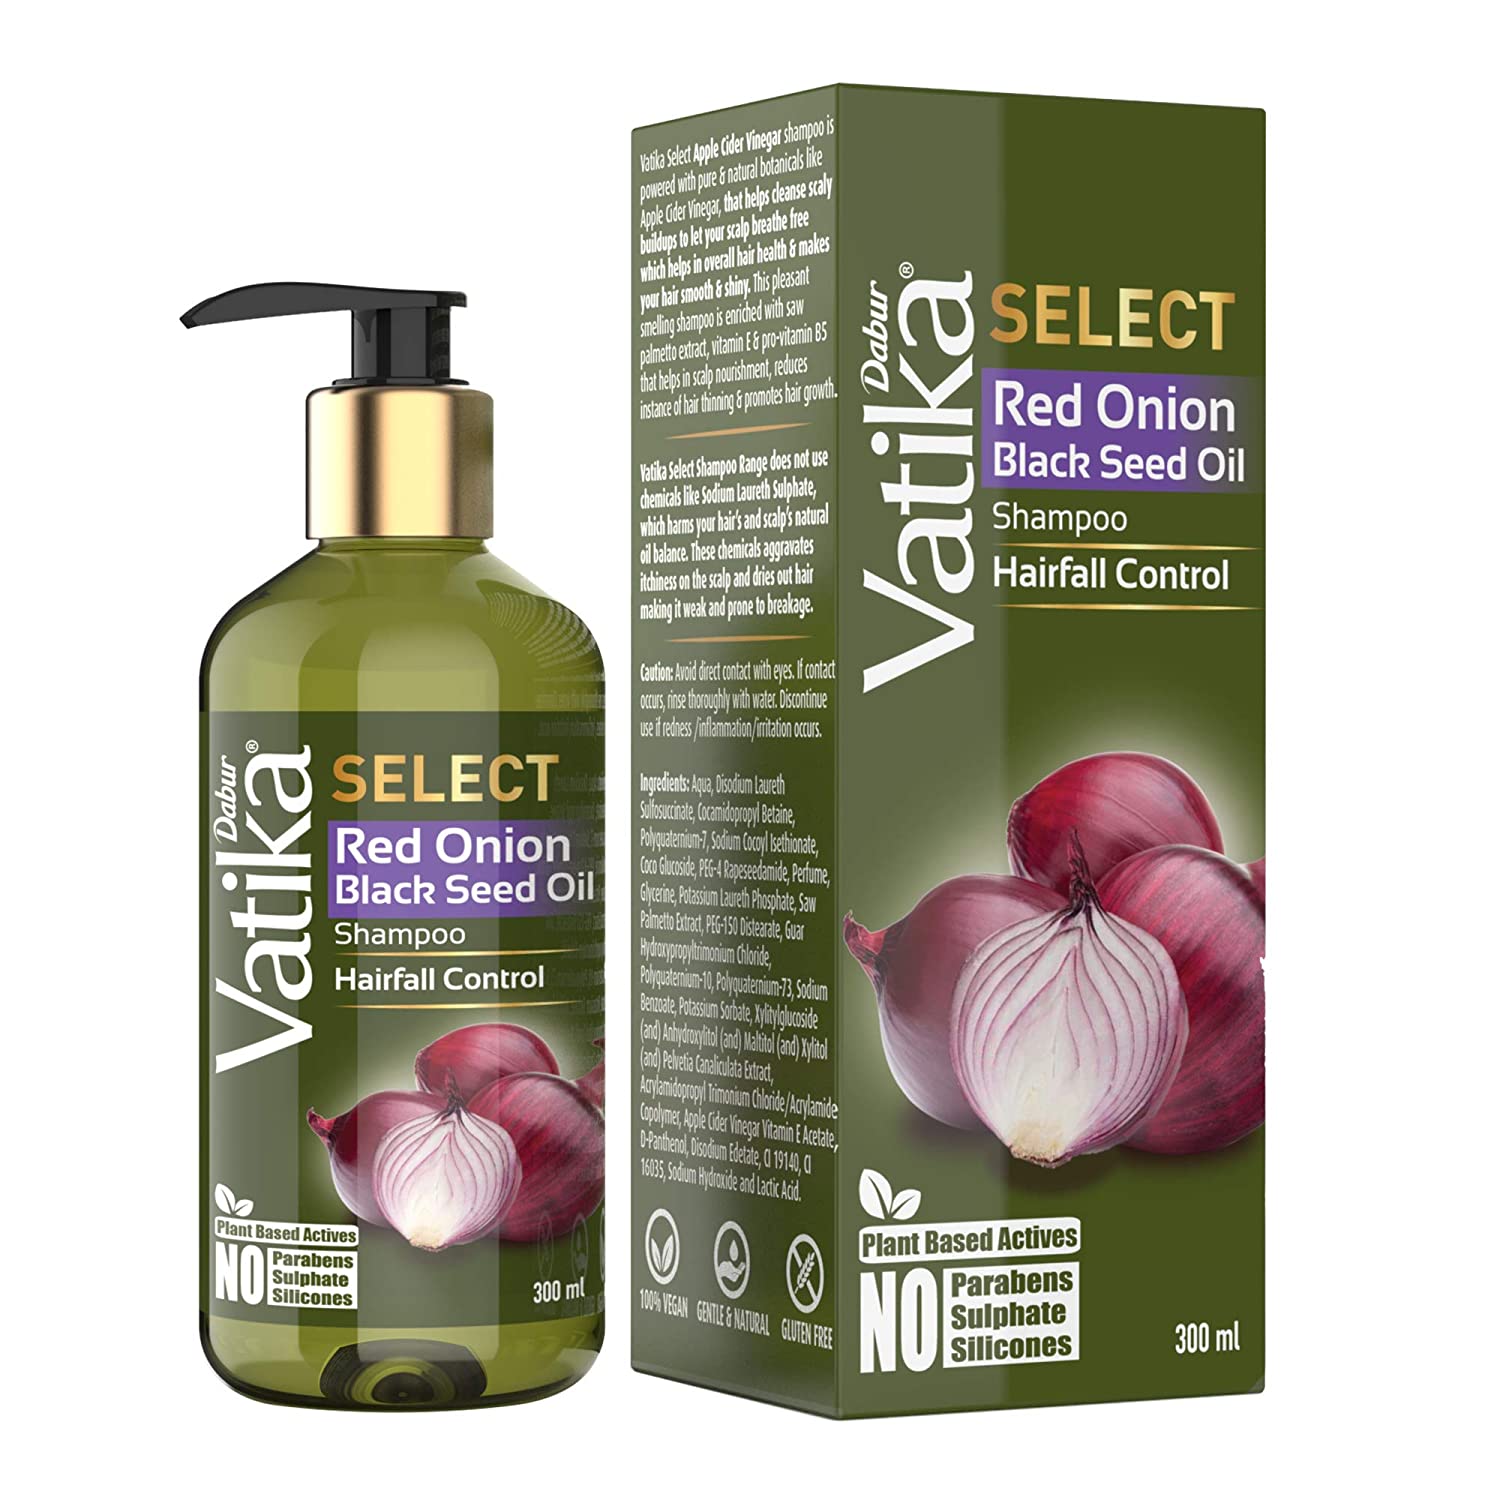 Dabur Vatika Select Red Onion Black Seed Oil Shampoo 300ml -  Dabur - Medizzo.com